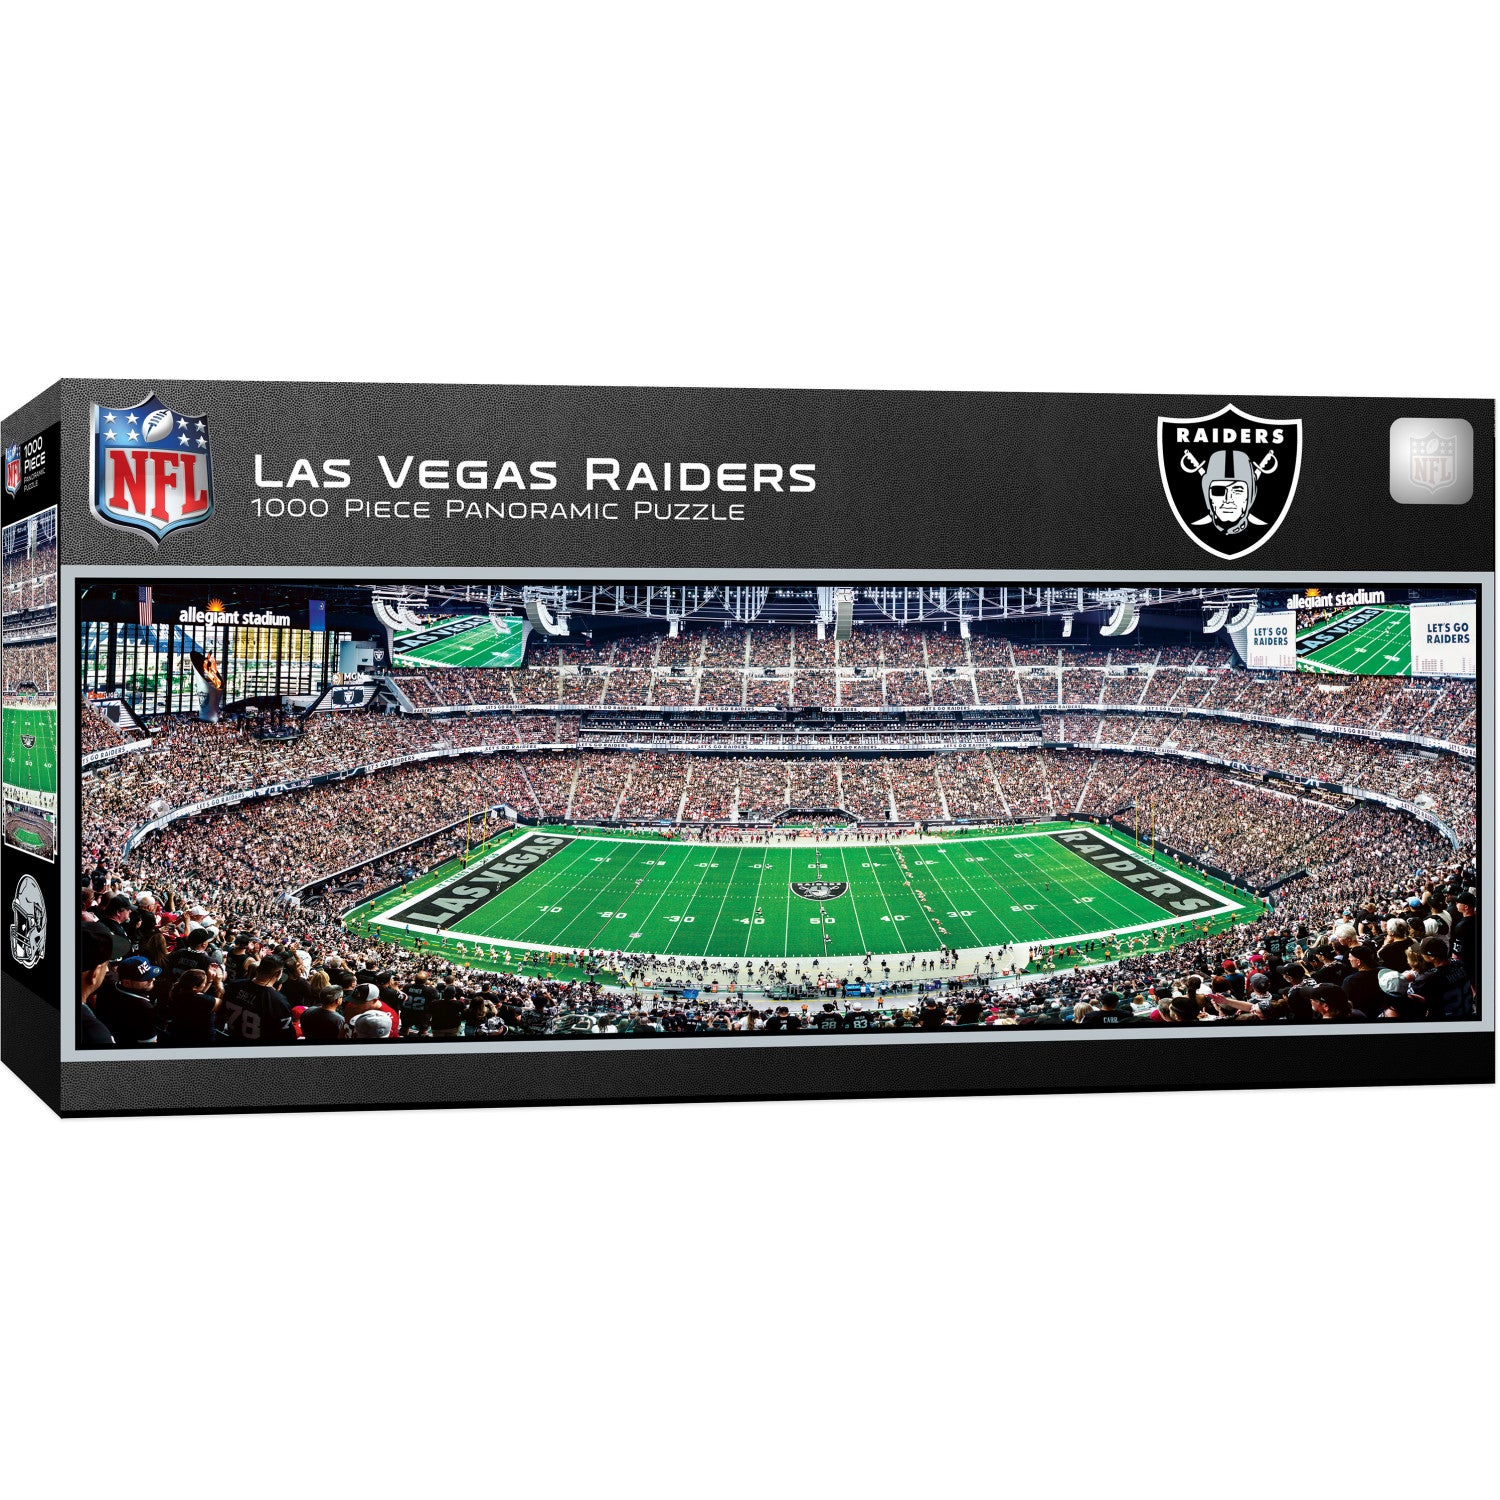 Las Vegas Raiders - 1000 Piece Panoramic Puzzle - Center View